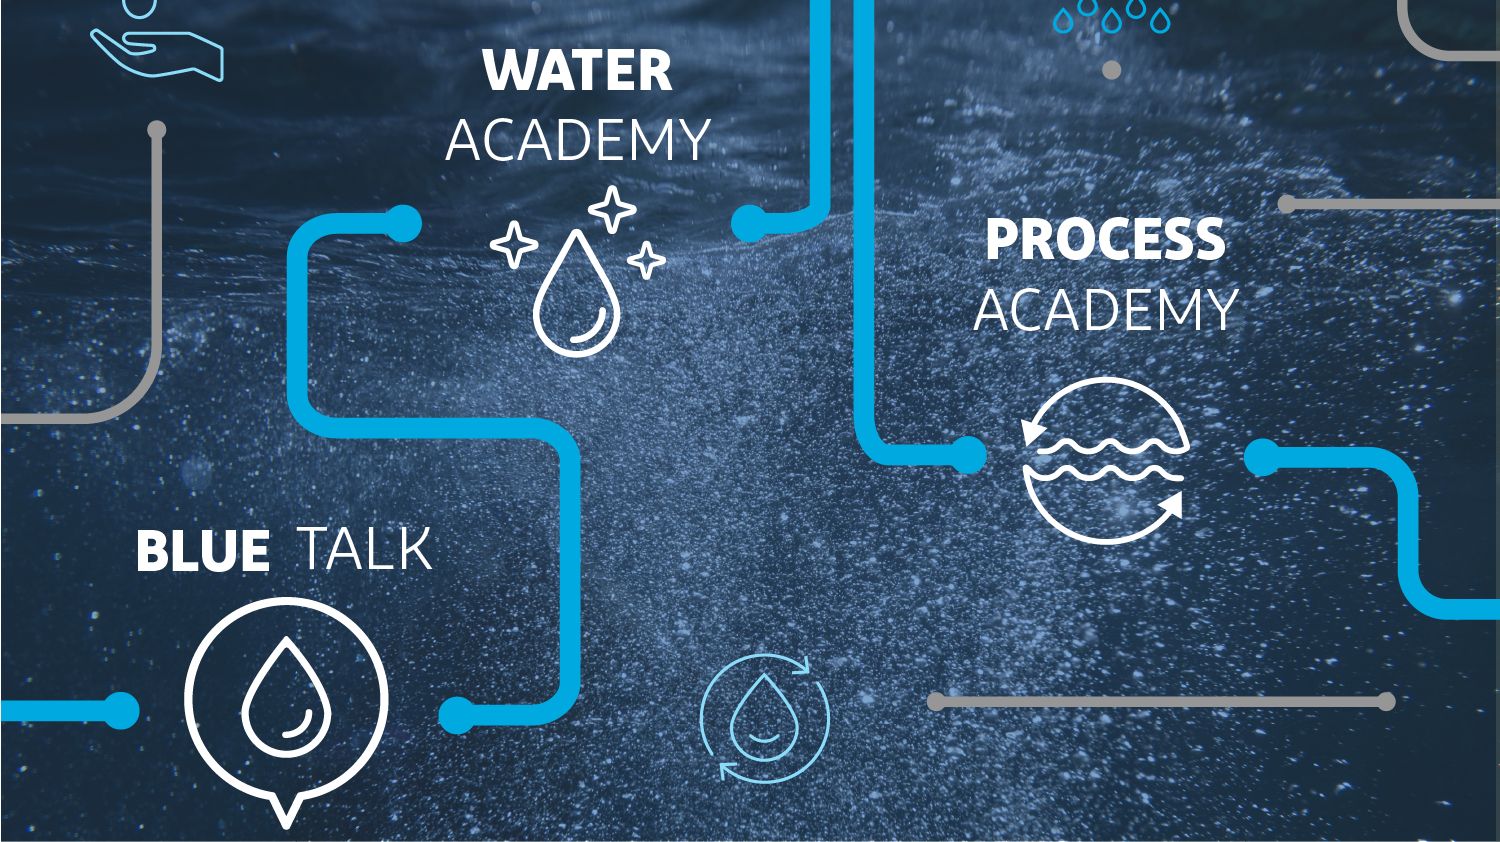 杜邦水解决方案水学院和过程学院的标志，后面有一个亚搏国际网页分子的插图